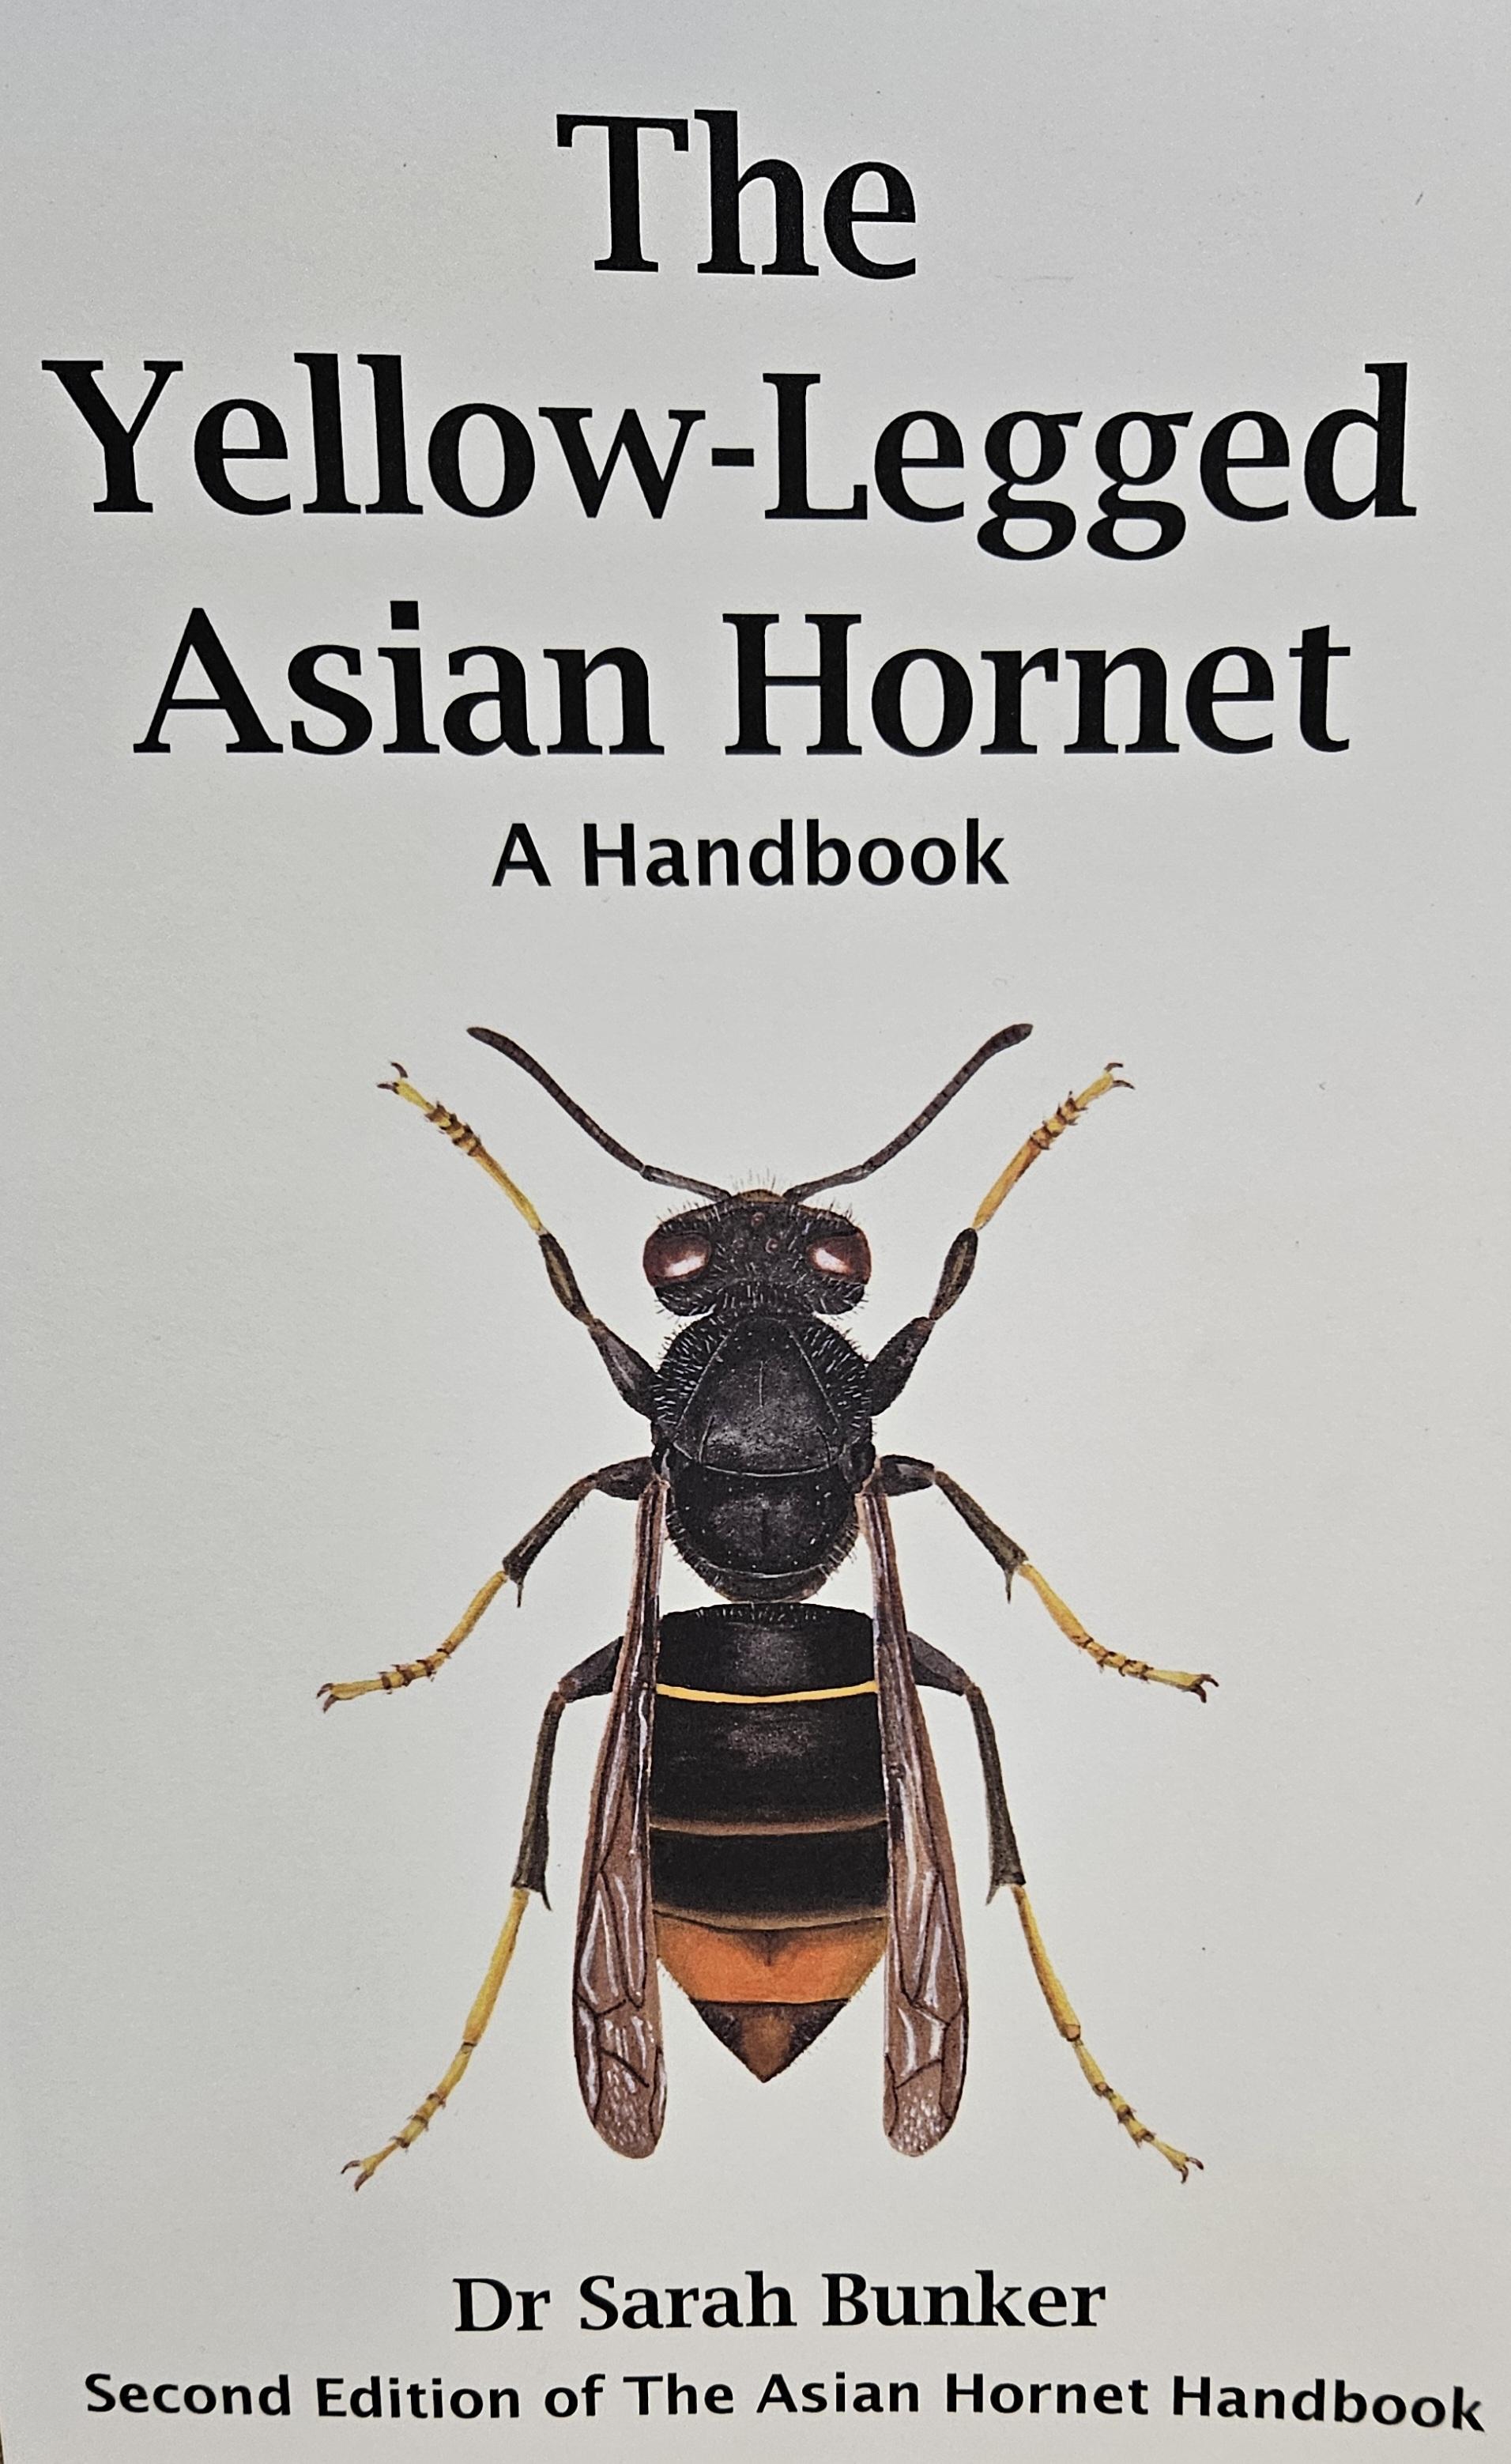 The Asian Hornet Handbook (Second Edition)